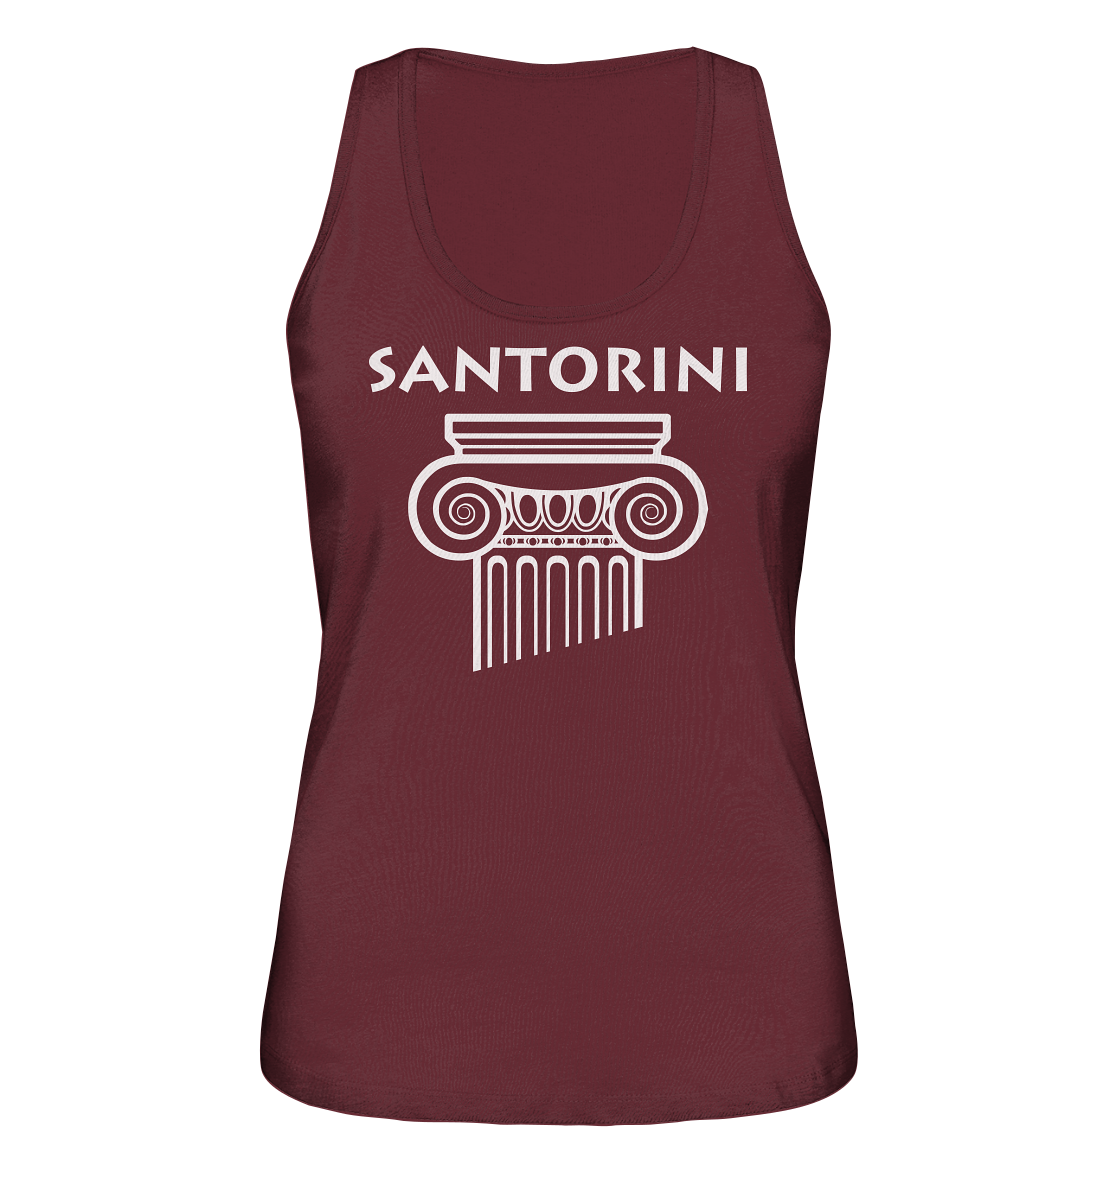 Santorini Griechischer Säulenkopf - Ladies Organic Tank-Top